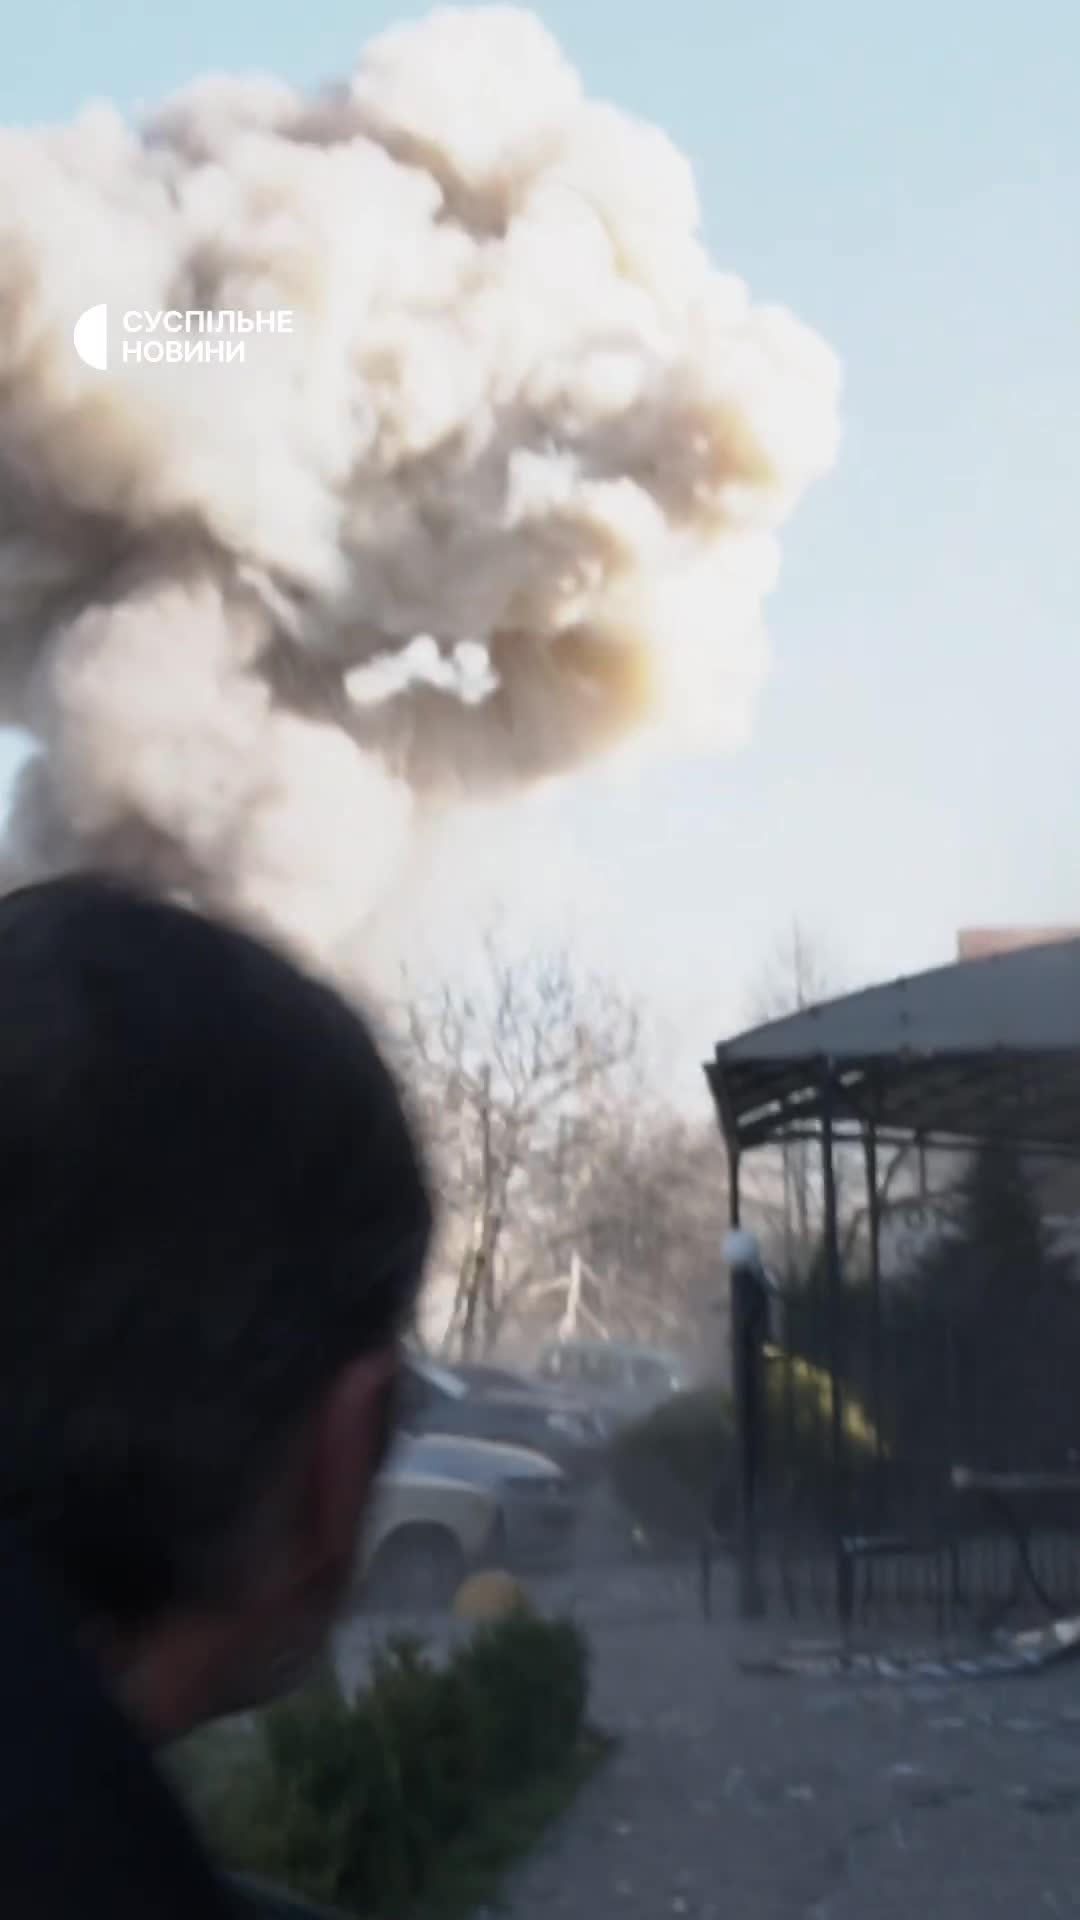 ضرب صاروخي مزدوج في زابوريزهيا بينما كان رجال الإنقاذ والشرطة والصحفيون في الموقع